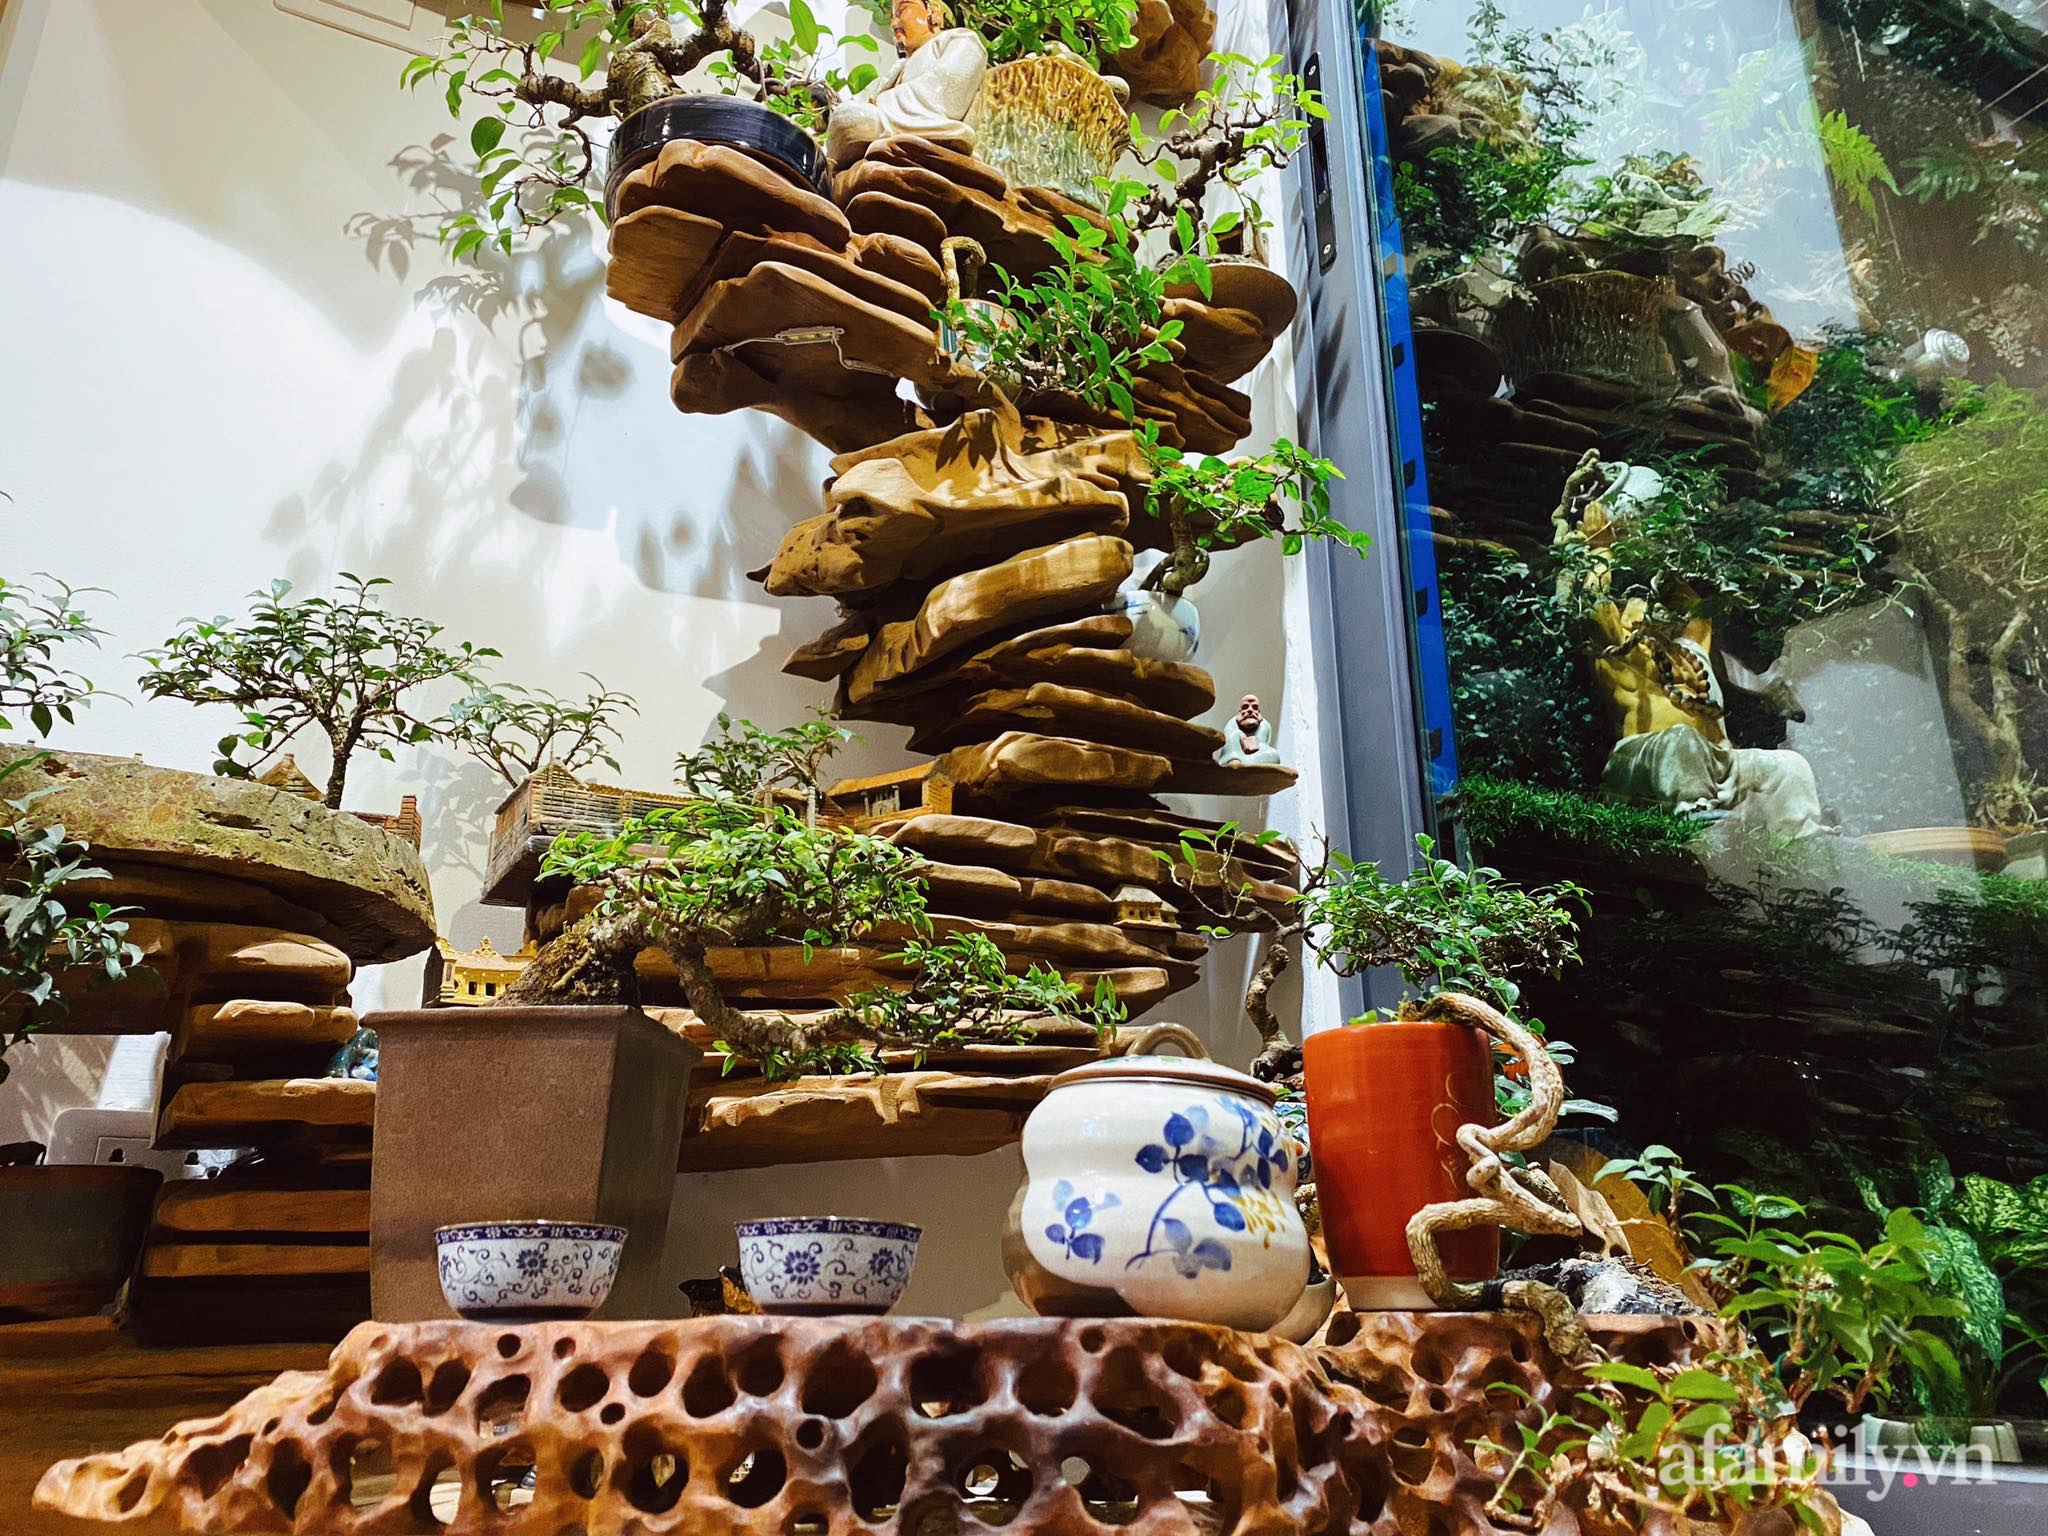 Căn hộ 56m² ấm nồng sắc xuân với cả trăm cây bonsai và hoa ngập tràn ở Hà Nội - Ảnh 12.